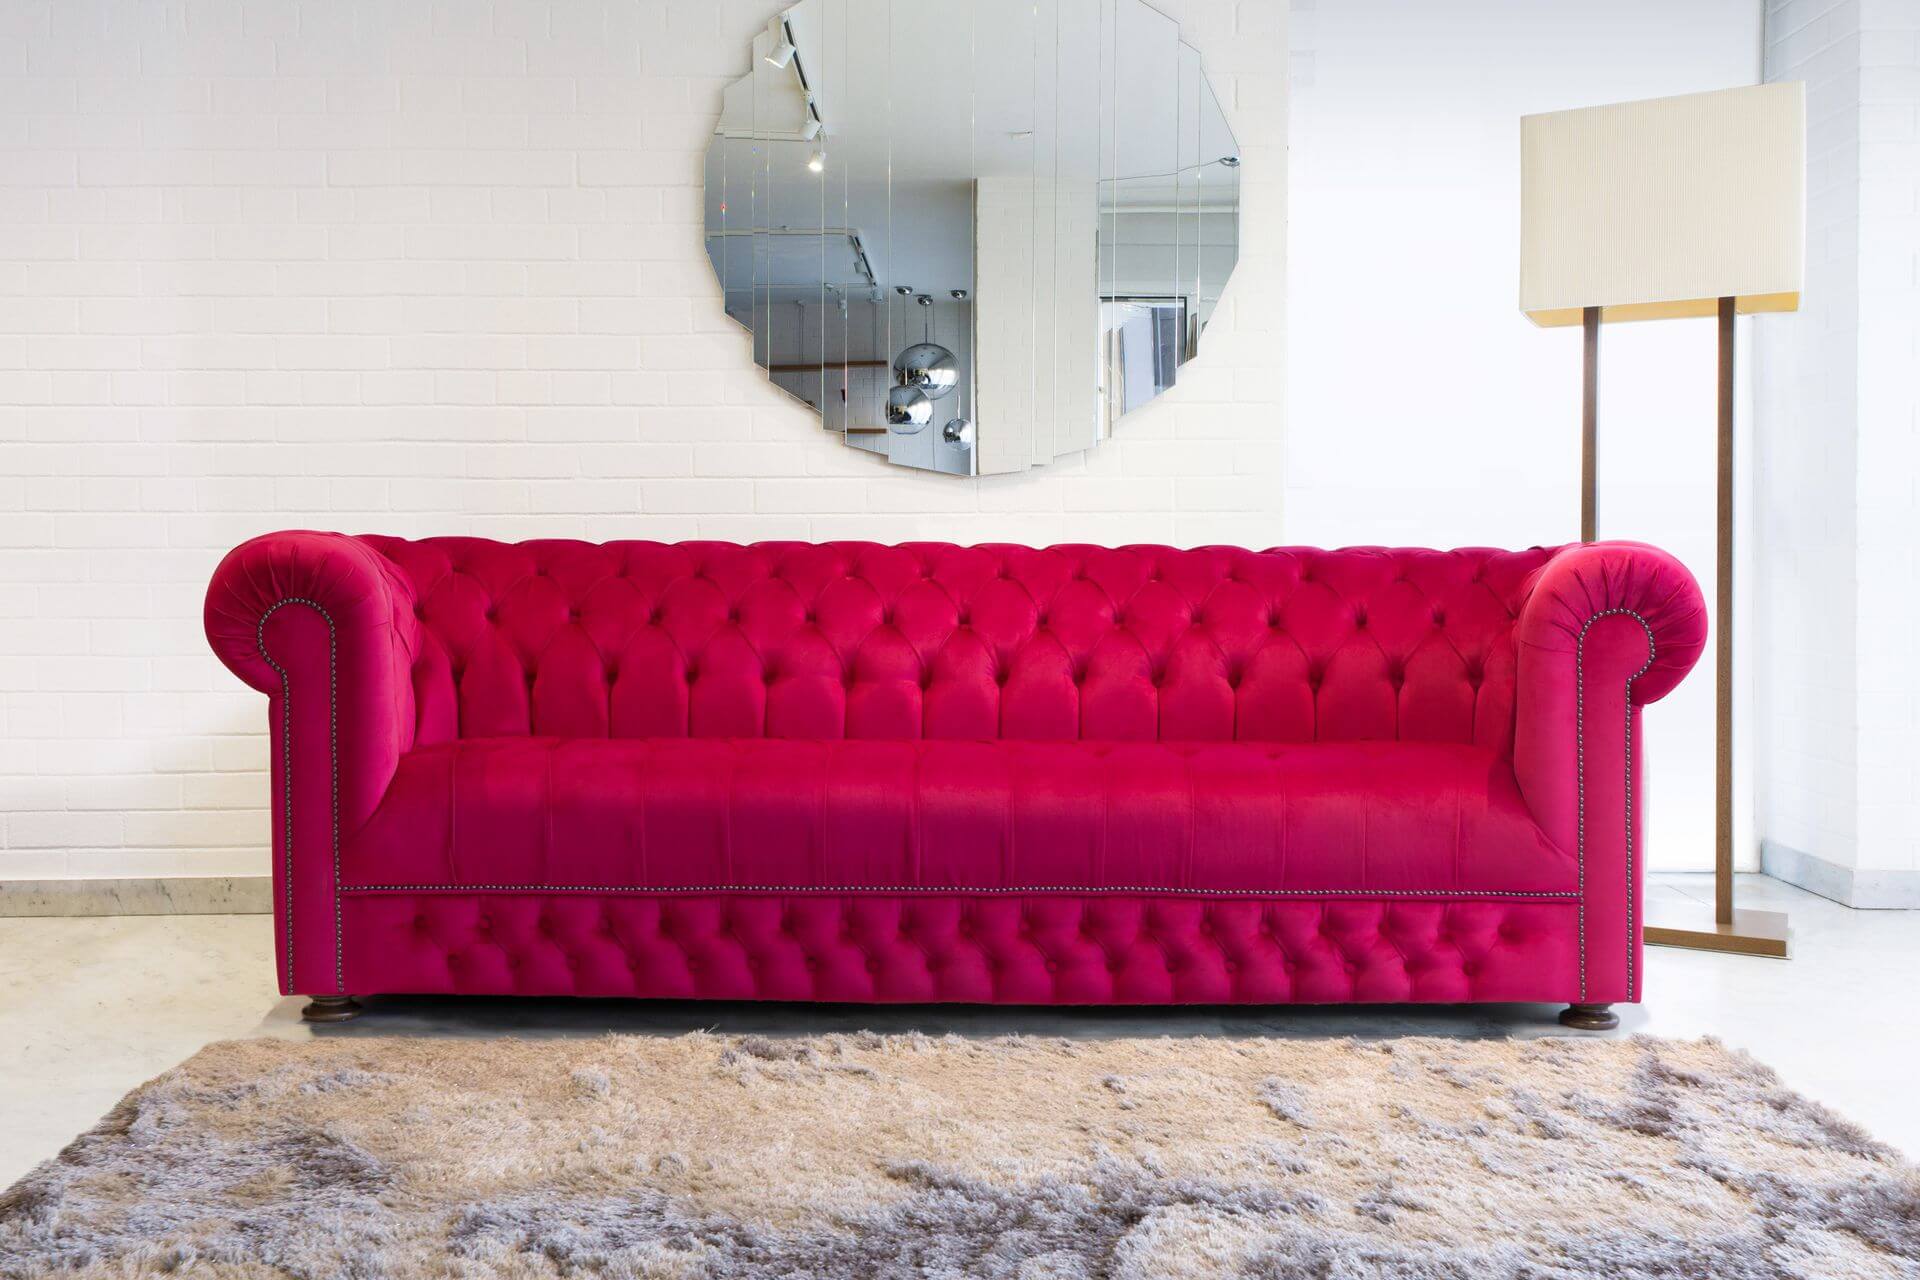 Belgravia vörös chesterfield kanapé